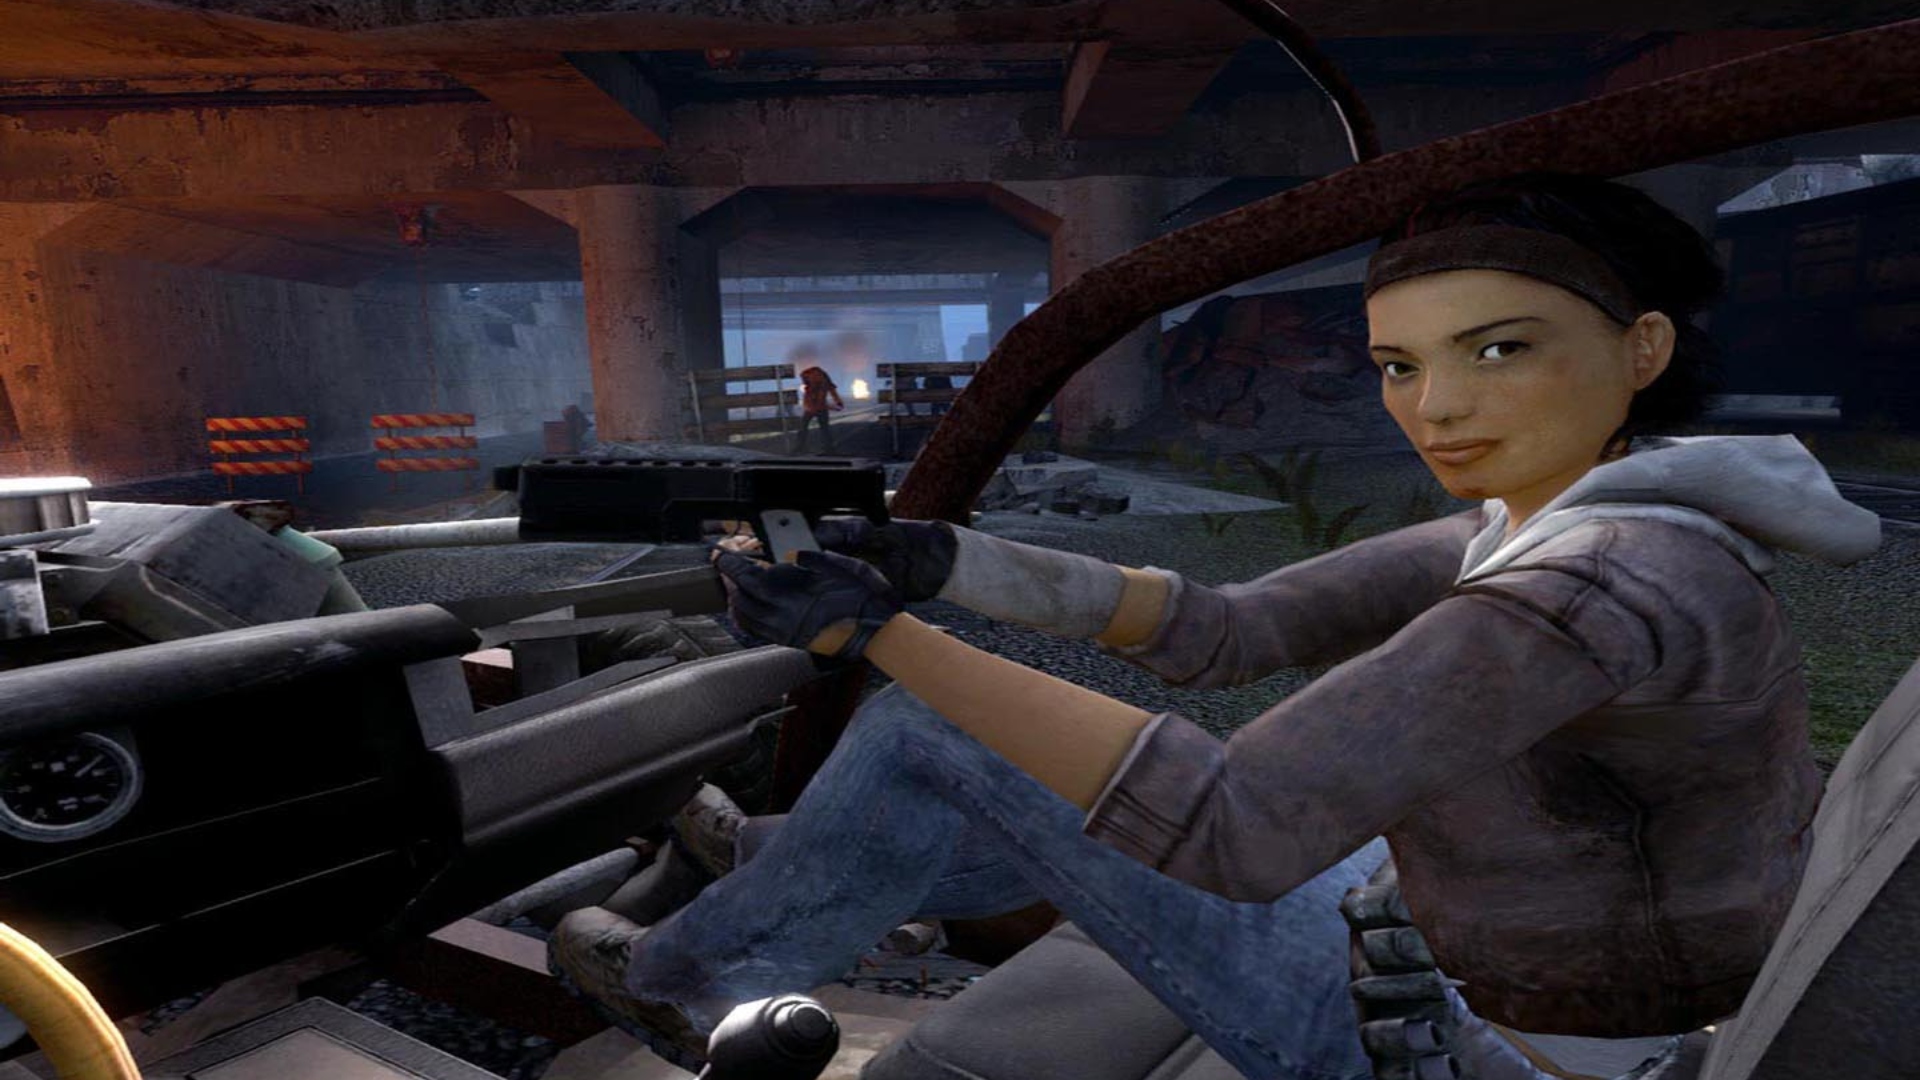 Novela de vida media: una mujer joven, Alyx Vance, se sienta en el asiento del pasajero de un automóvil en Valve FPS Juego Half-Life 2